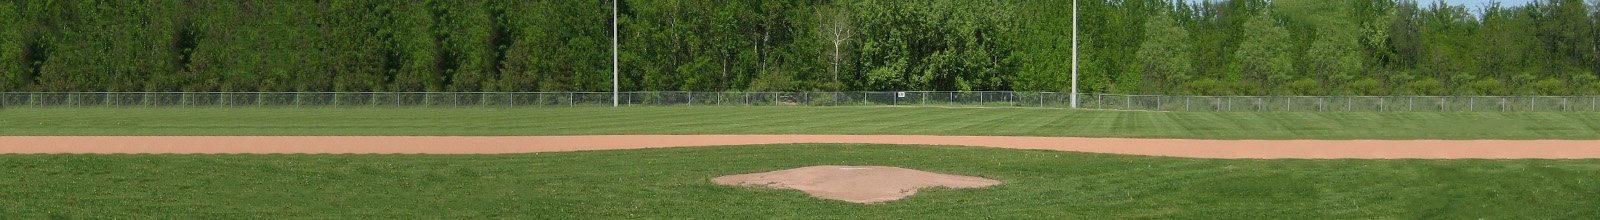 Baseball diamond at Joe Magani Park